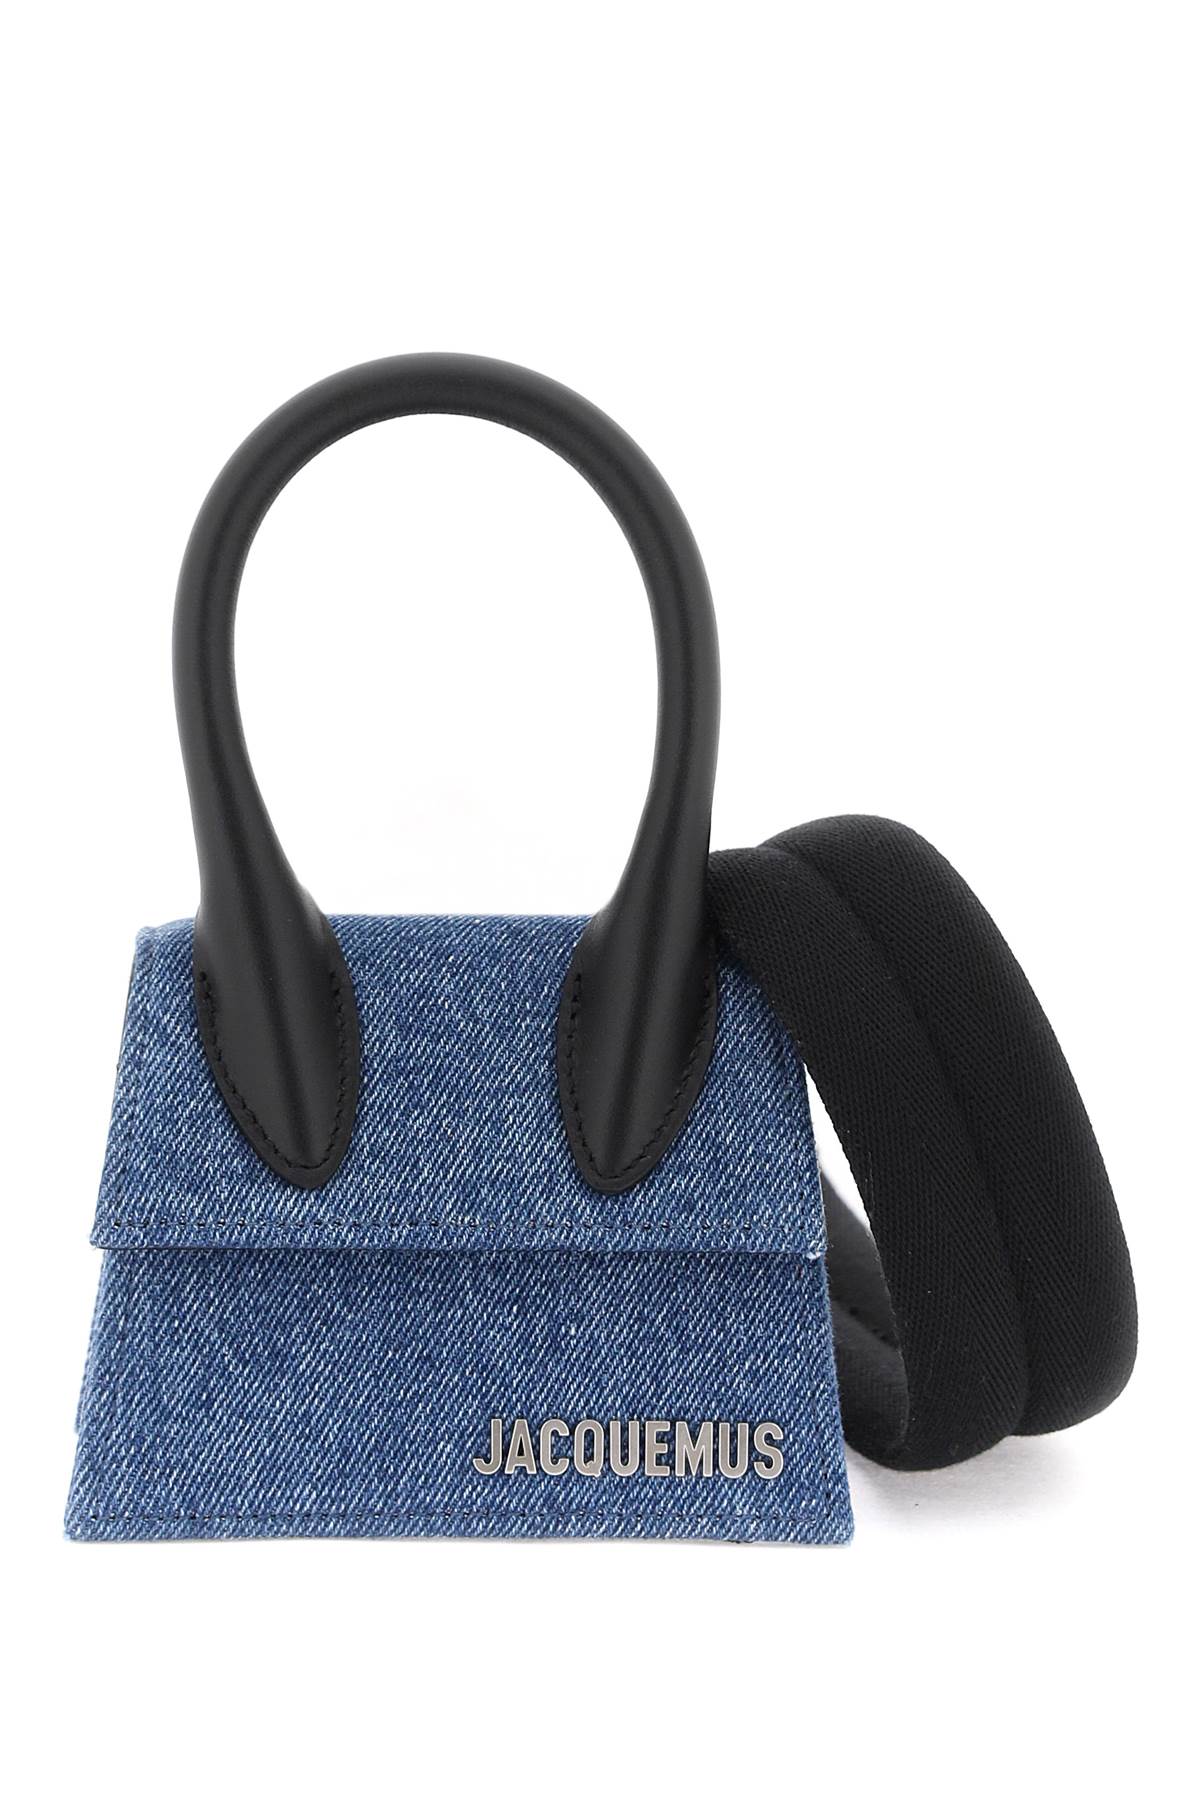 Jacquemus 'le Chiquito' Mini Bag In Black,blue